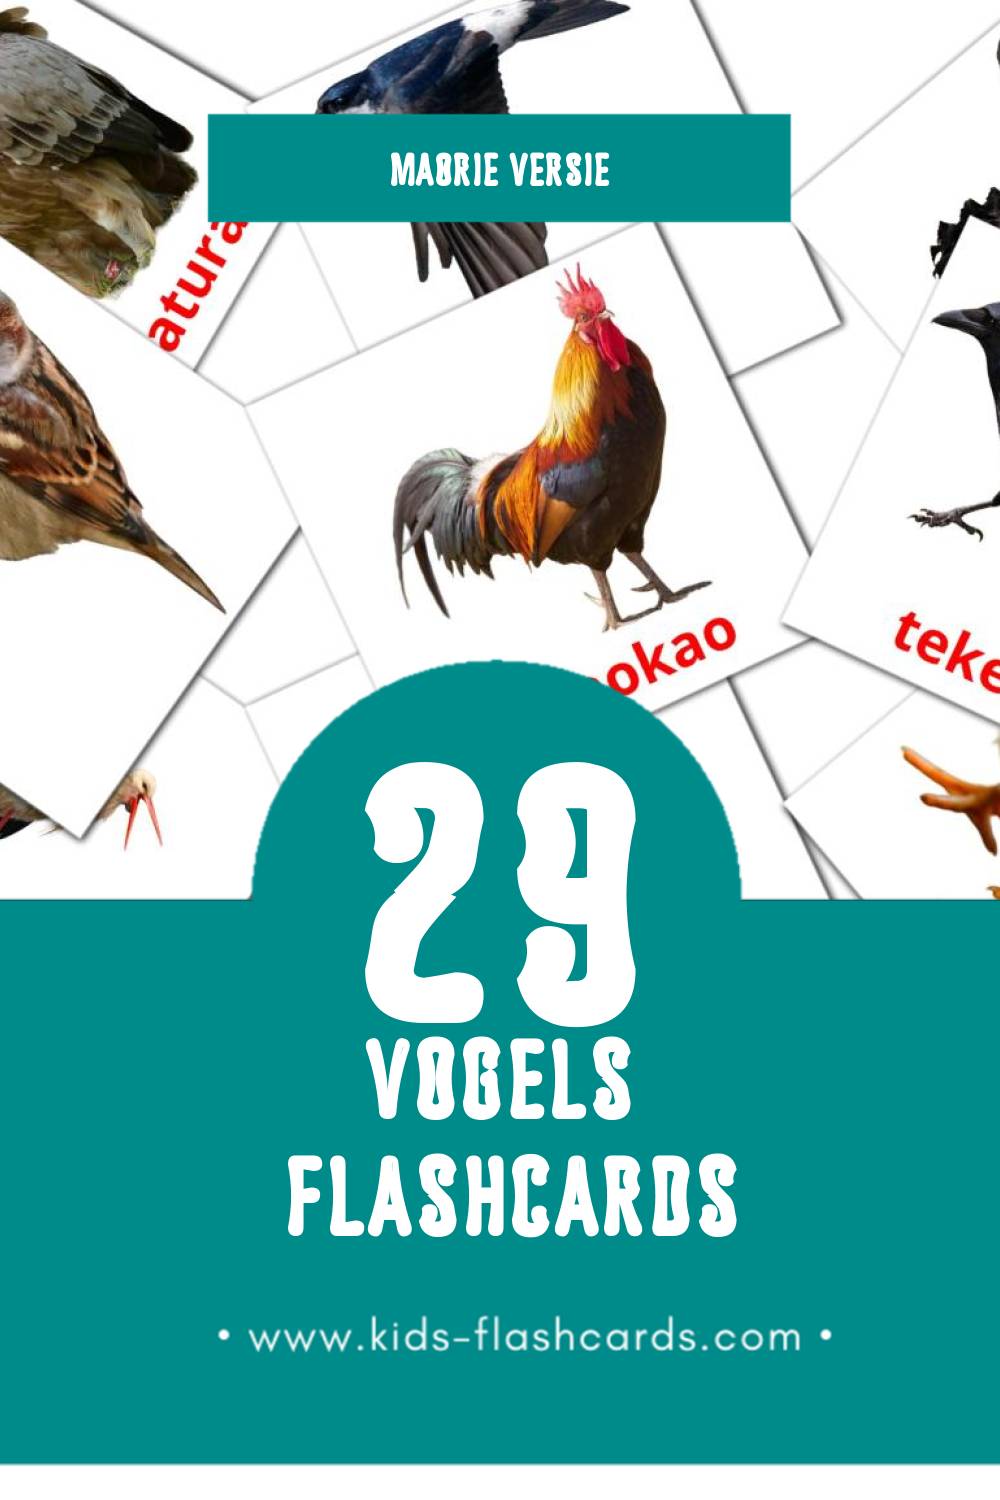 Visuele Manu Flashcards voor Kleuters (29 kaarten in het Maori)